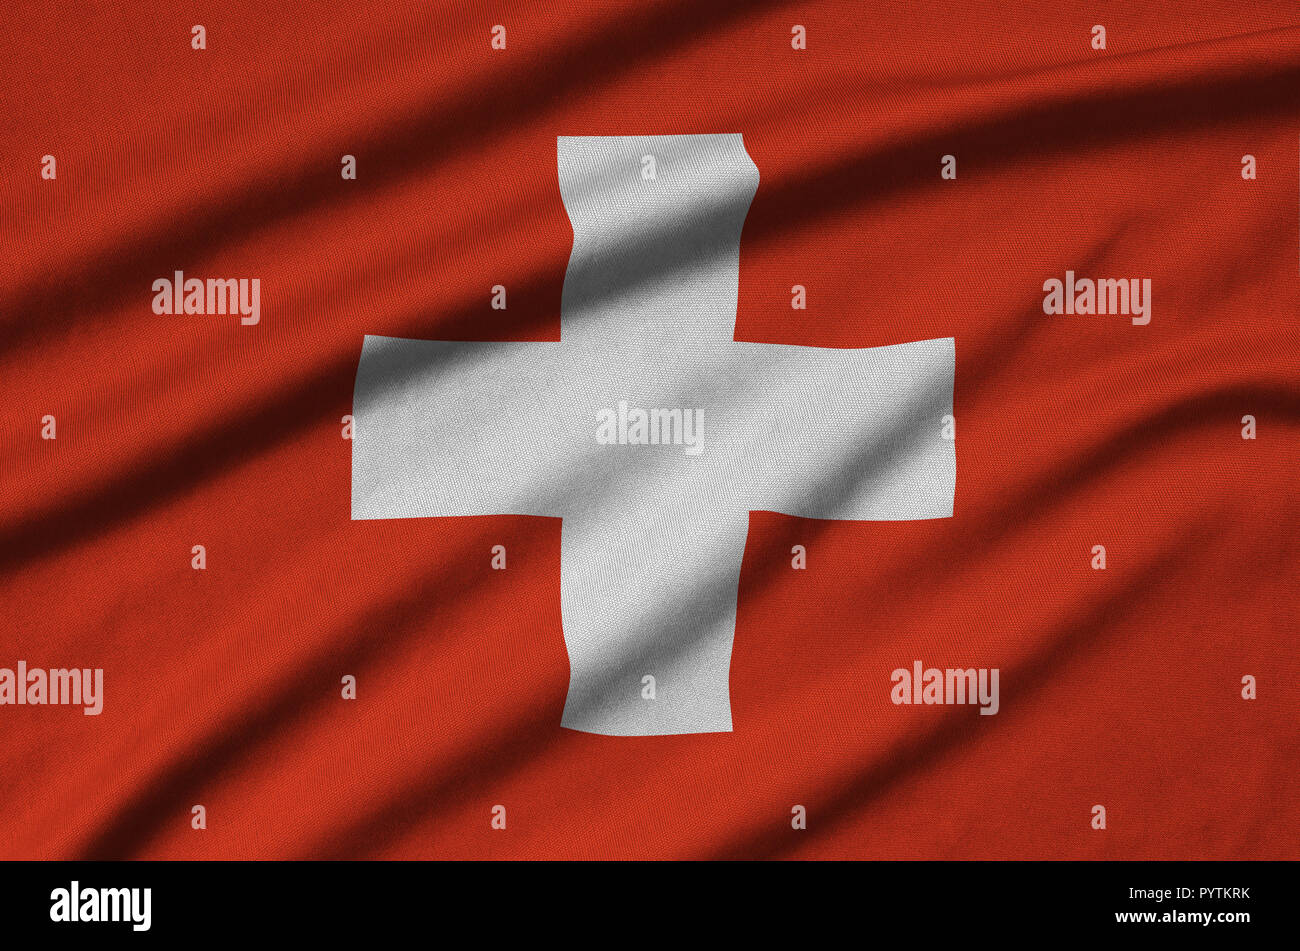 Switzerland National Soccer Team Stockfotos und -bilder Kaufen - Alamy